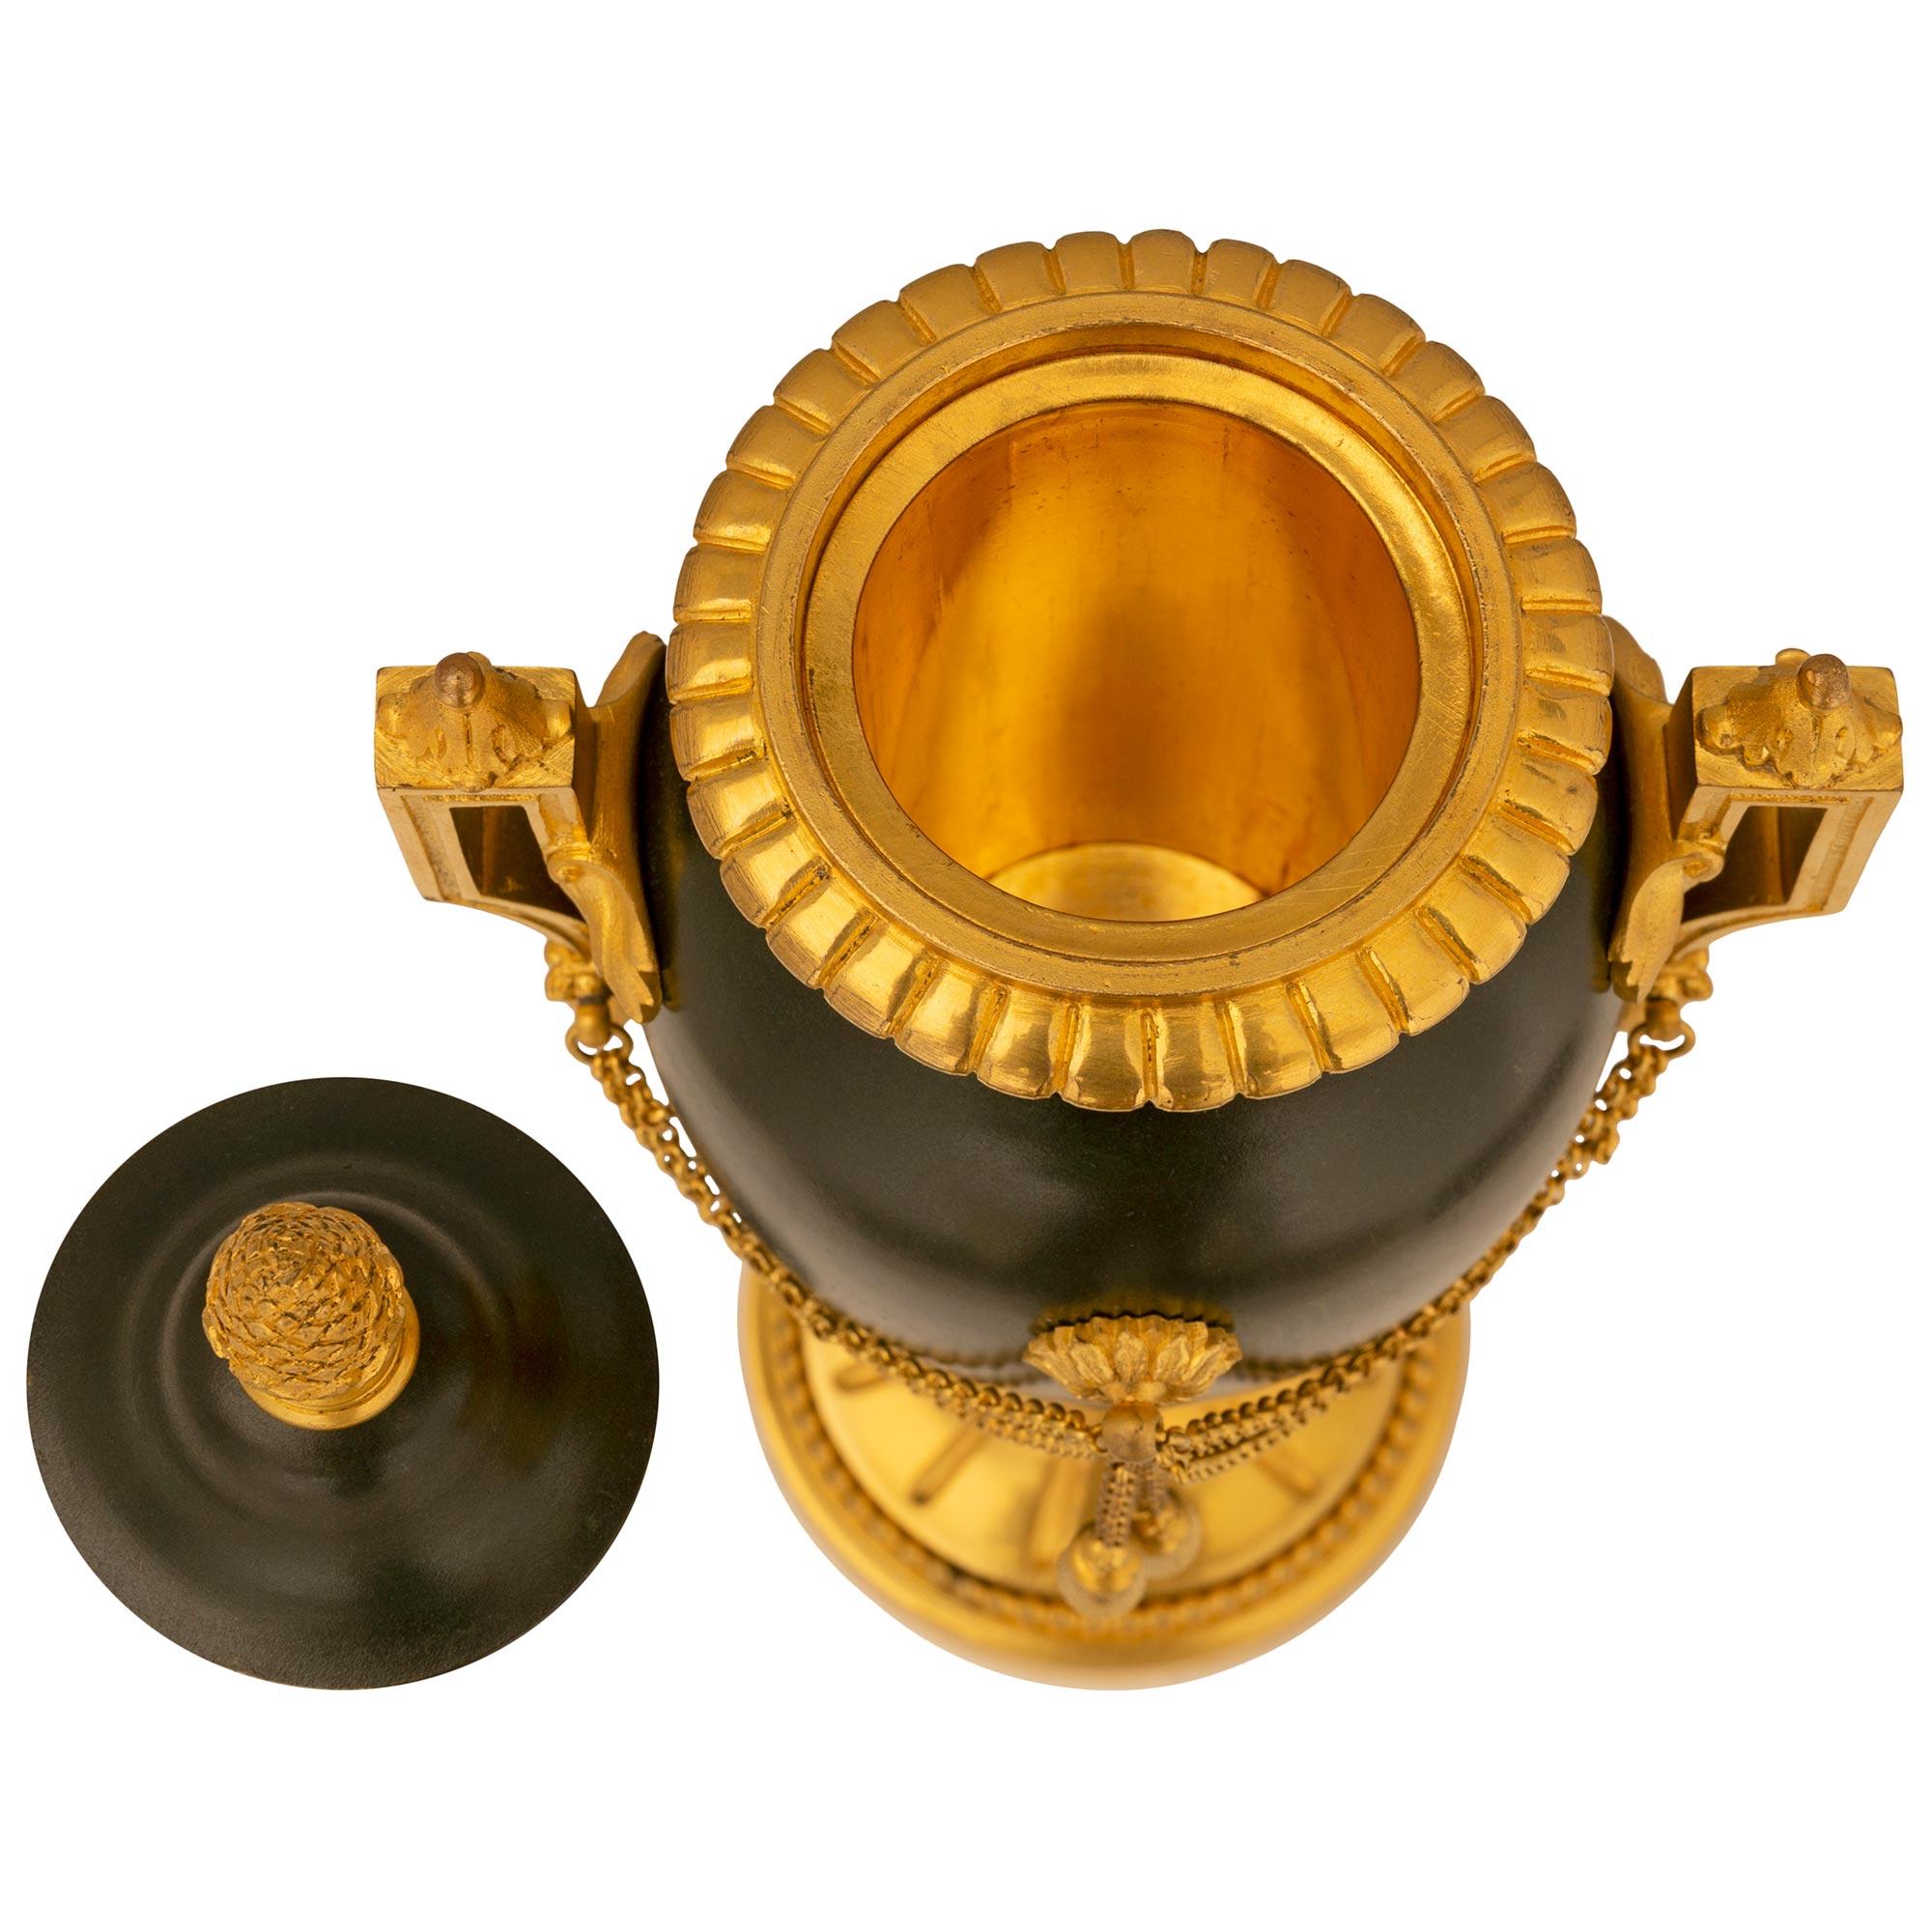 Ein sehr elegantes Paar französischer Urnen mit Deckel aus patinierter Bronze und Ormolu aus dem 19. Jahrhundert, signiert Fumiere et Cie. Jede Urne steht auf einem runden Ormolu-Sockel mit einer feinen gesprenkelten Umrandung und einem umlaufenden